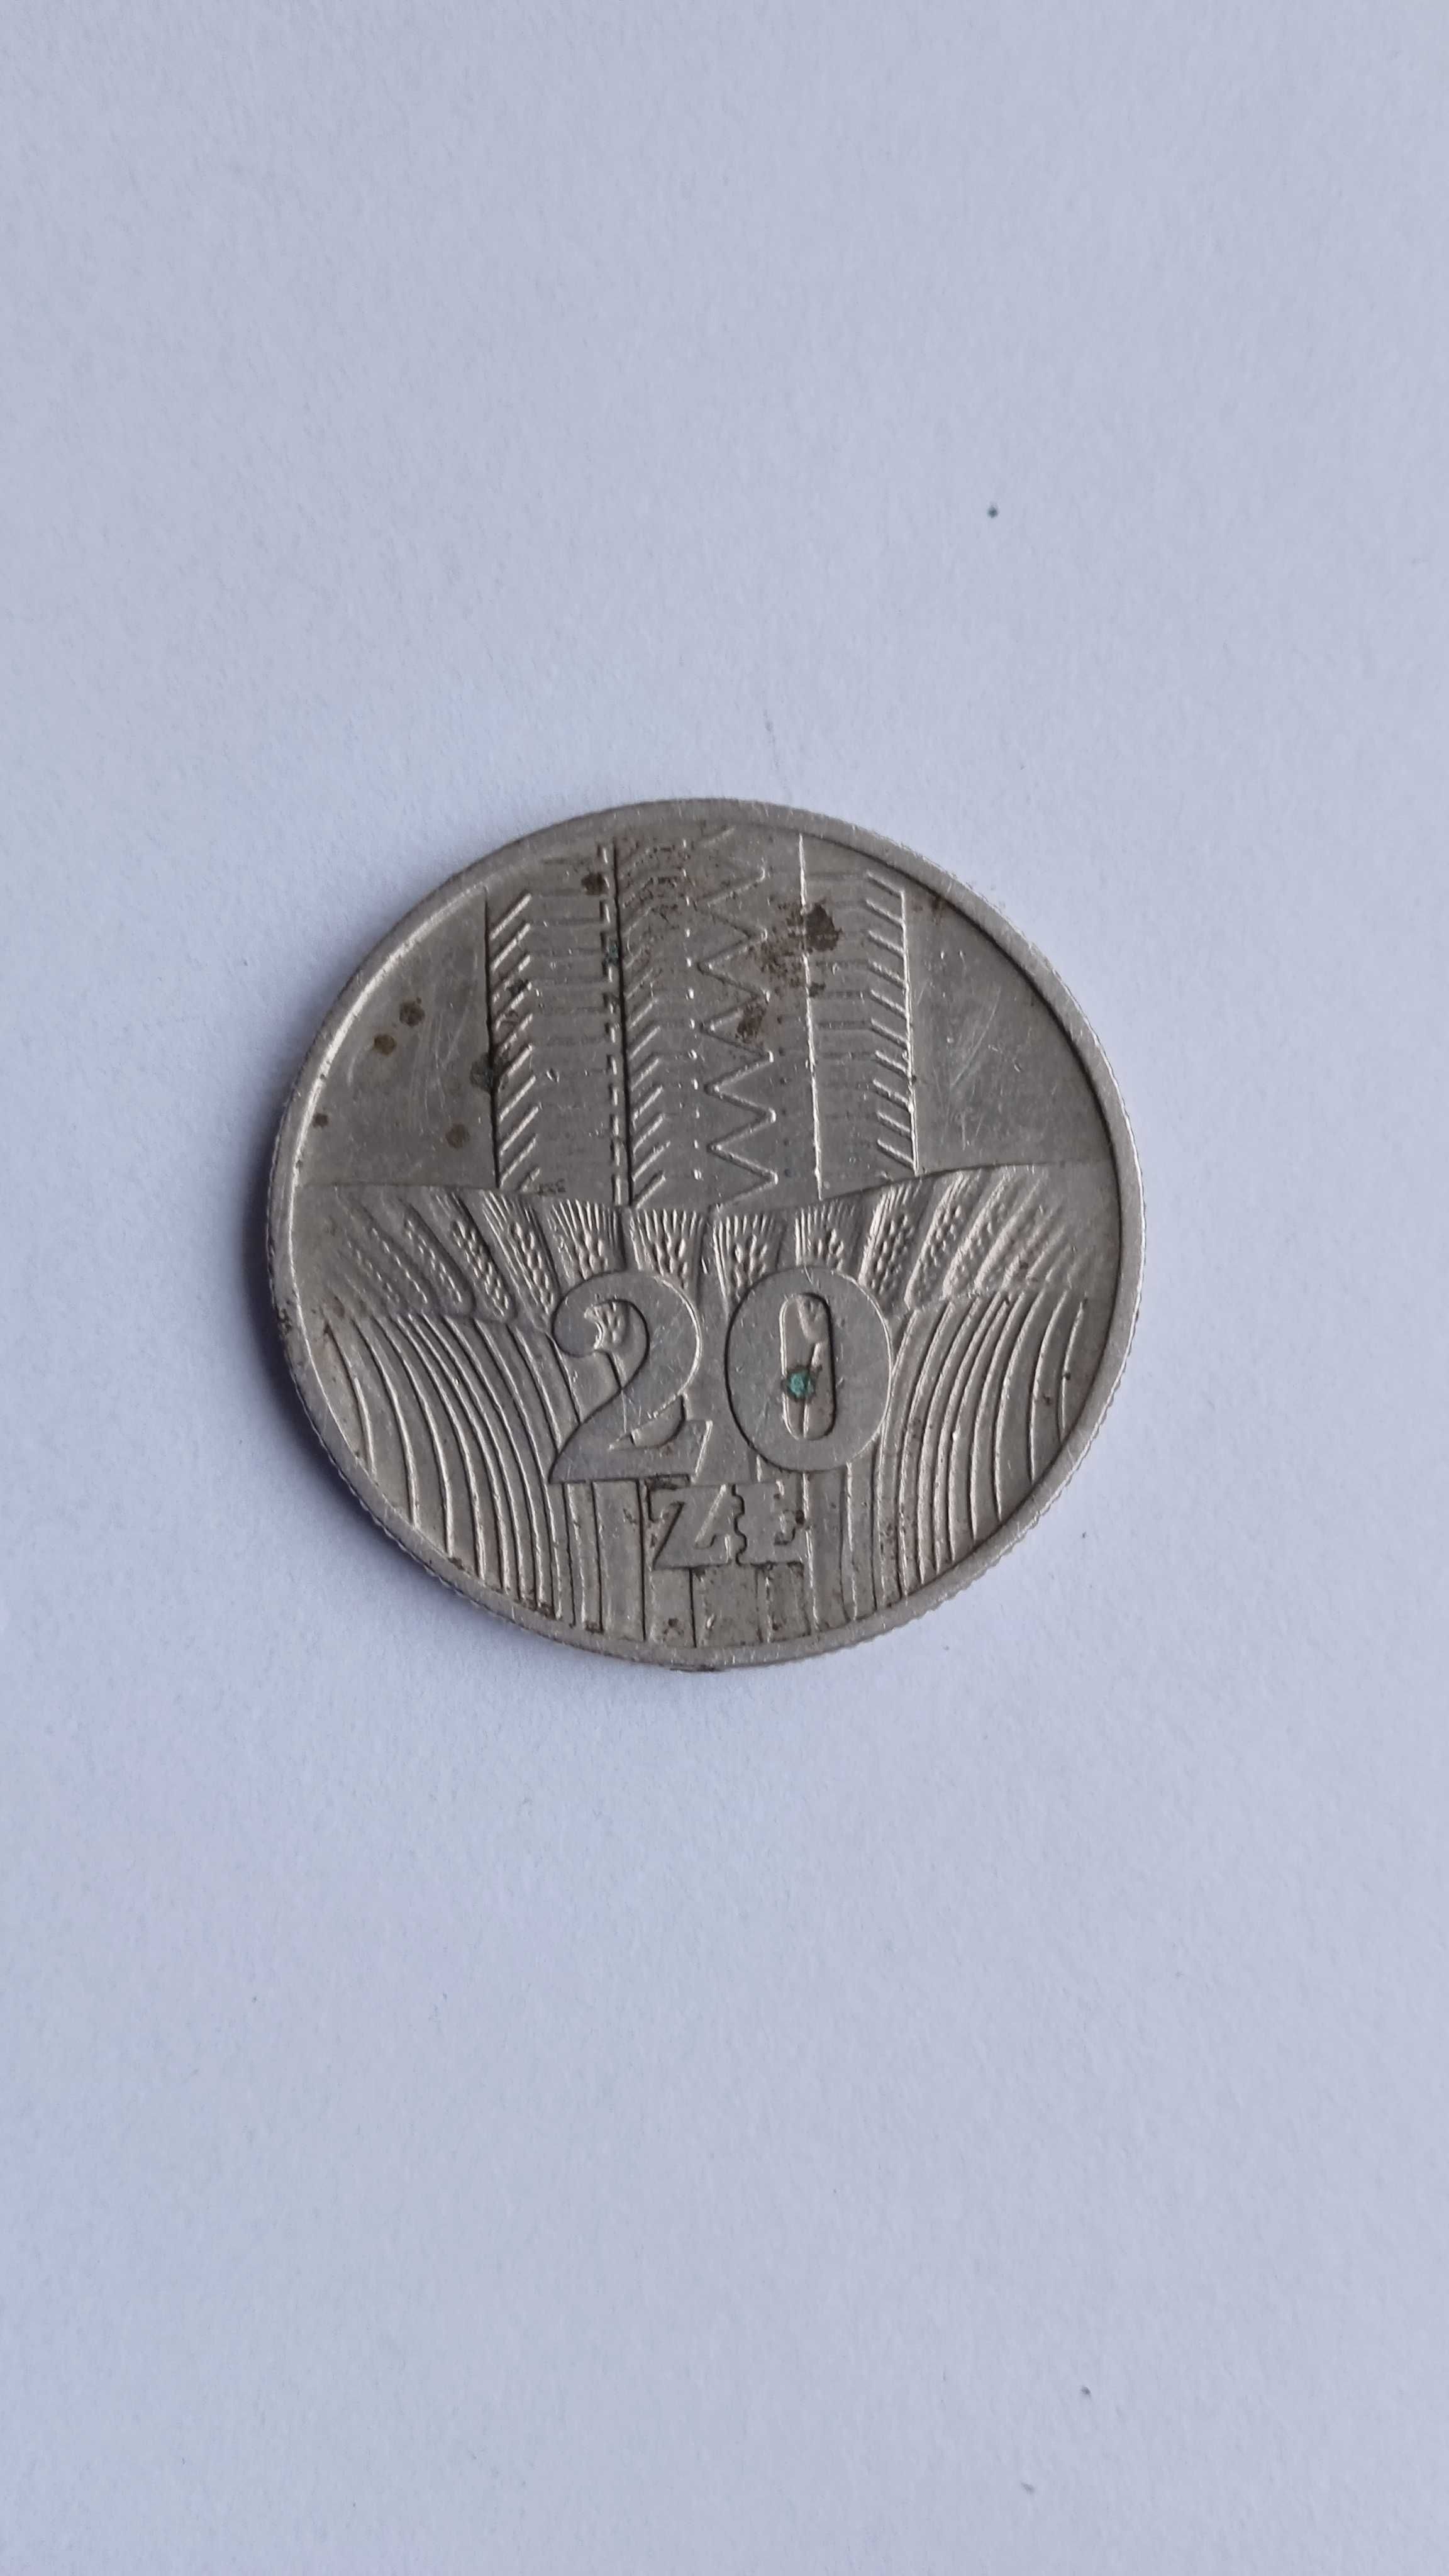 Moneta 20 zł z 1974 roku. Wieżowiec, bez znaku mennicy.